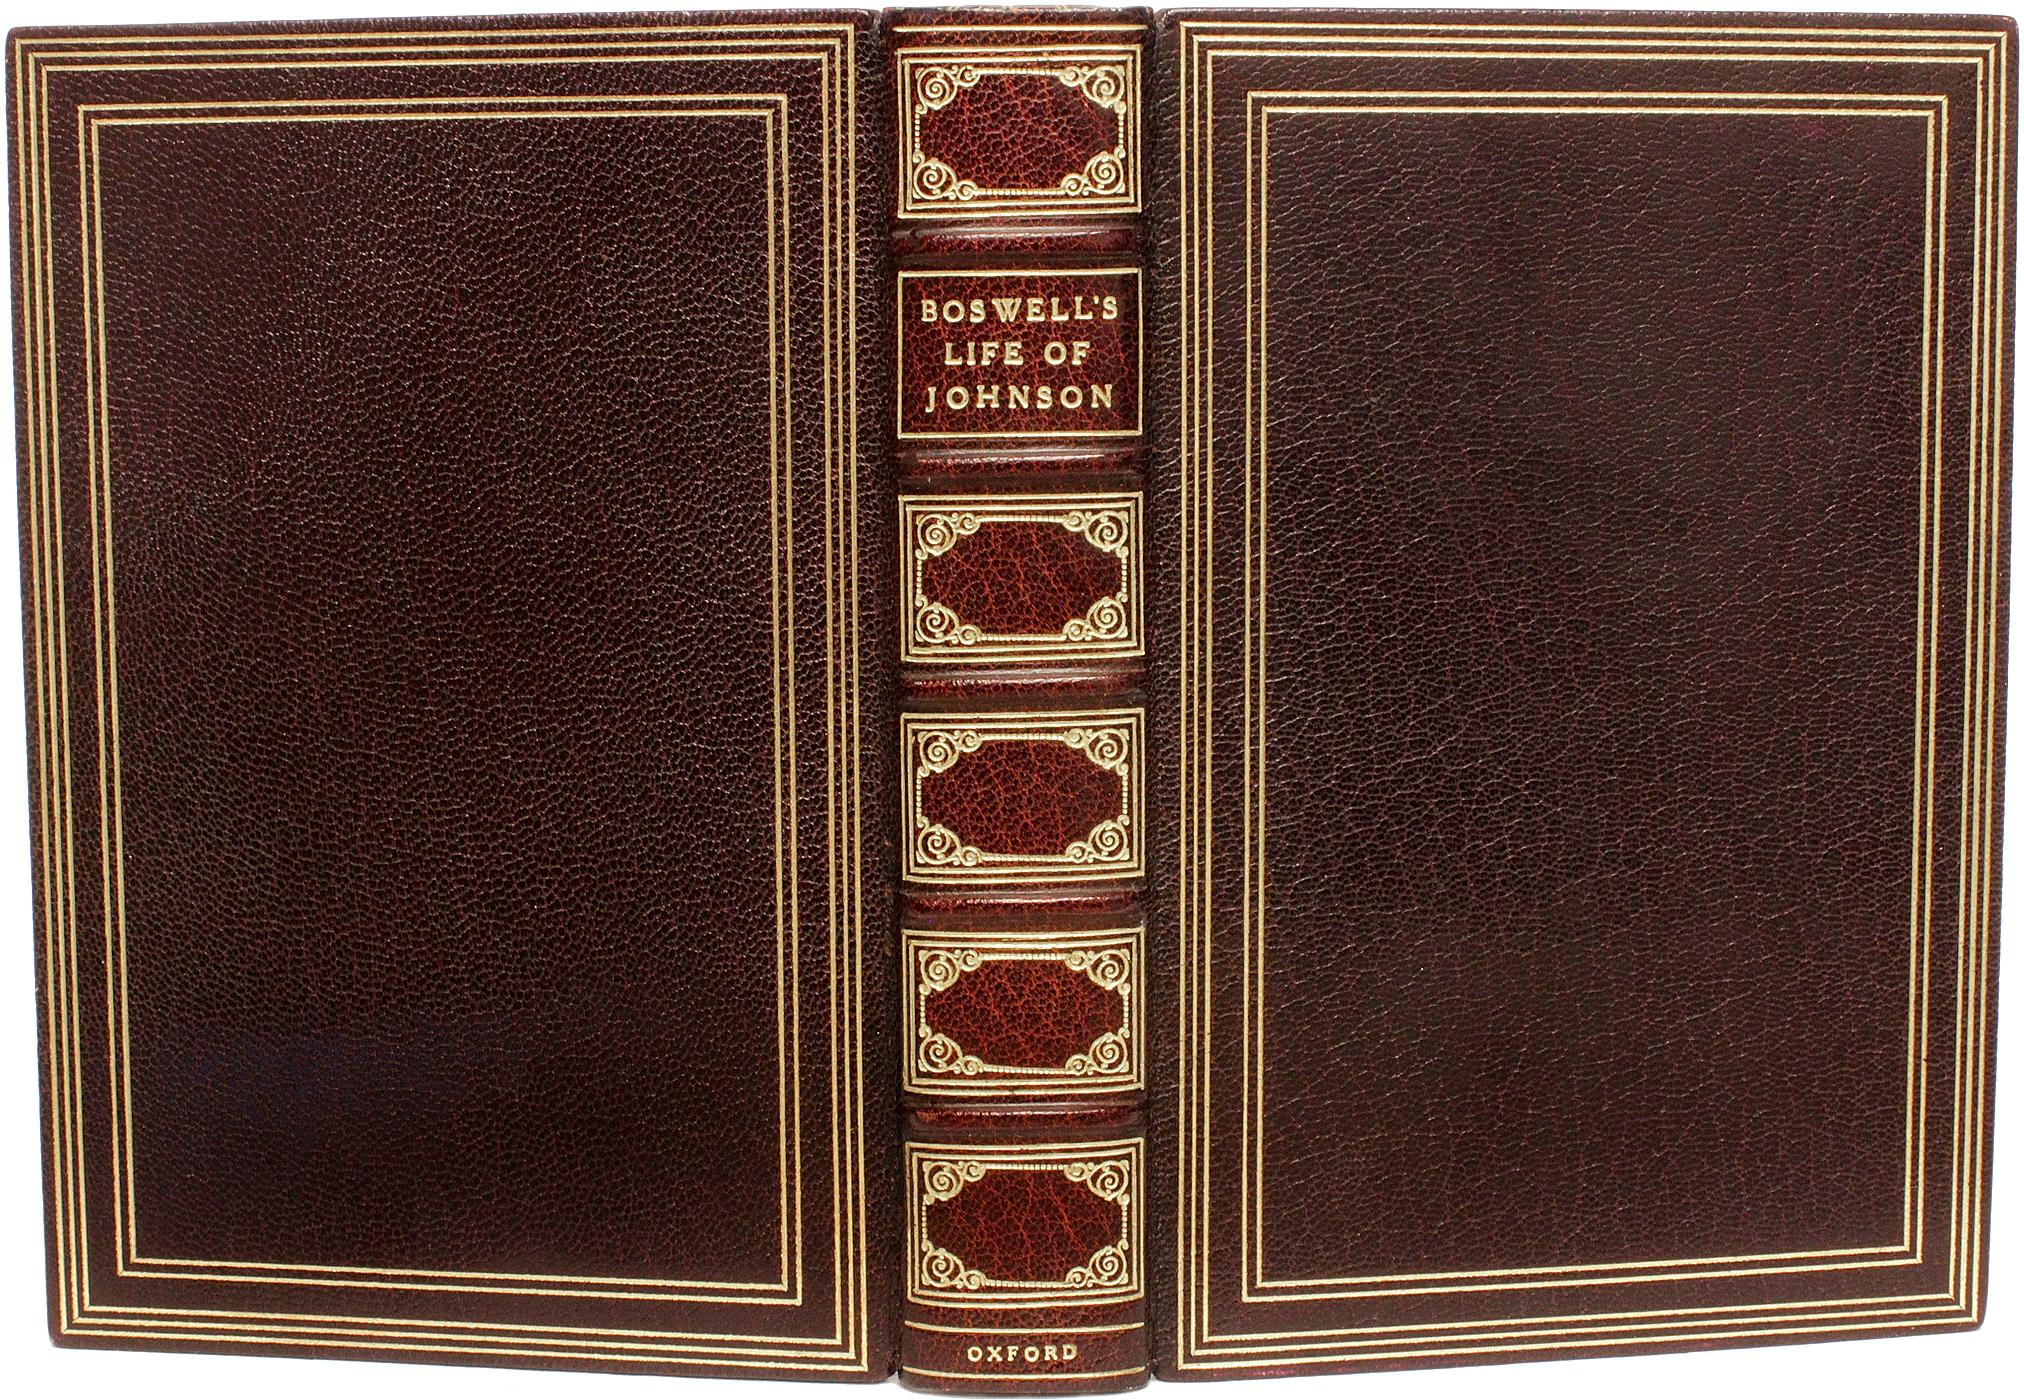 AUTEUR : BOSWELL, James

TITRE : Boswell's Life of Johnson.

ÉDITEUR : Oxford University Press, 1924.

DESCRIPTION : ÉDITION INDIENNE SUR PAPIER. 2 volumes reliés en 1, 7-3/8